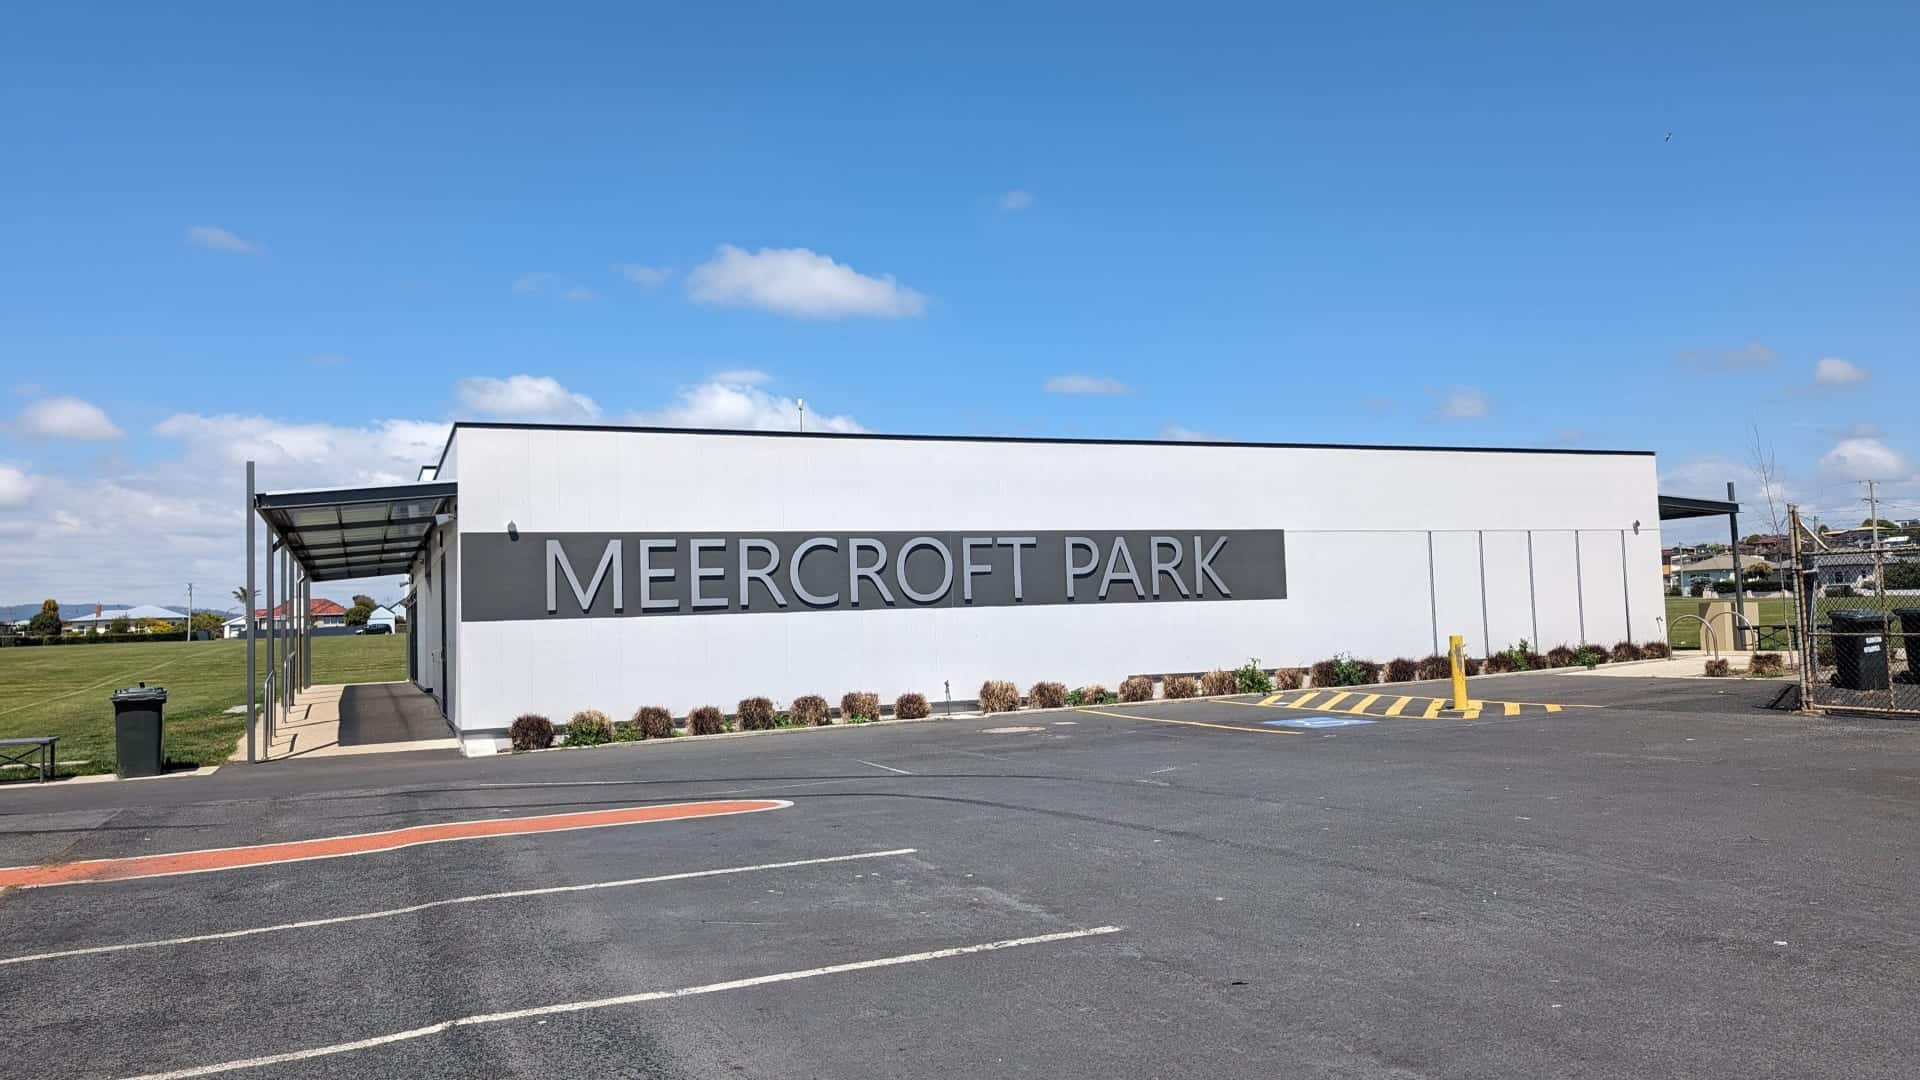 Meercroft Park